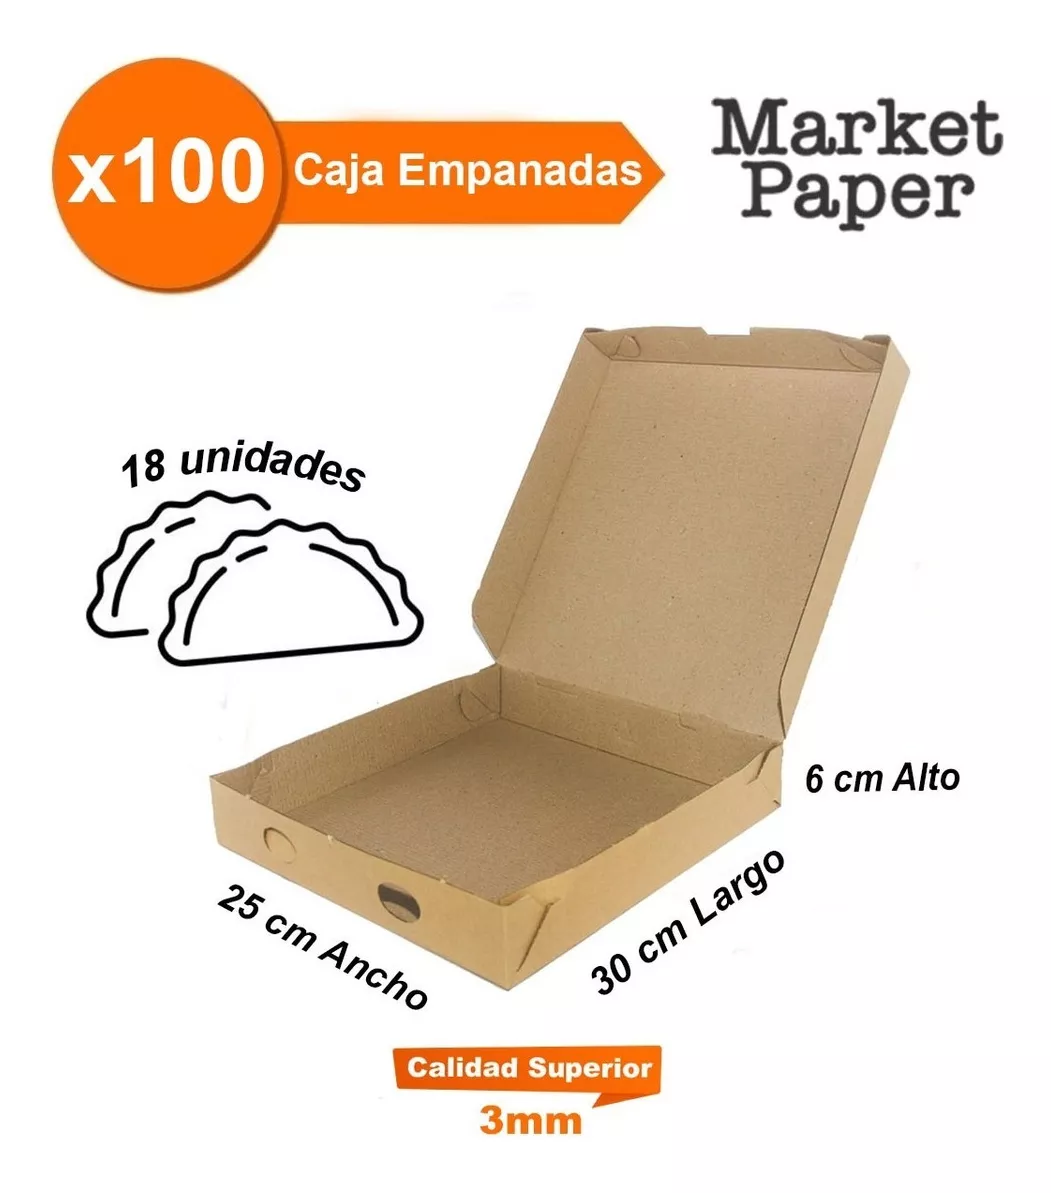 Tercera imagen para búsqueda de cajas de empanadas por mayor